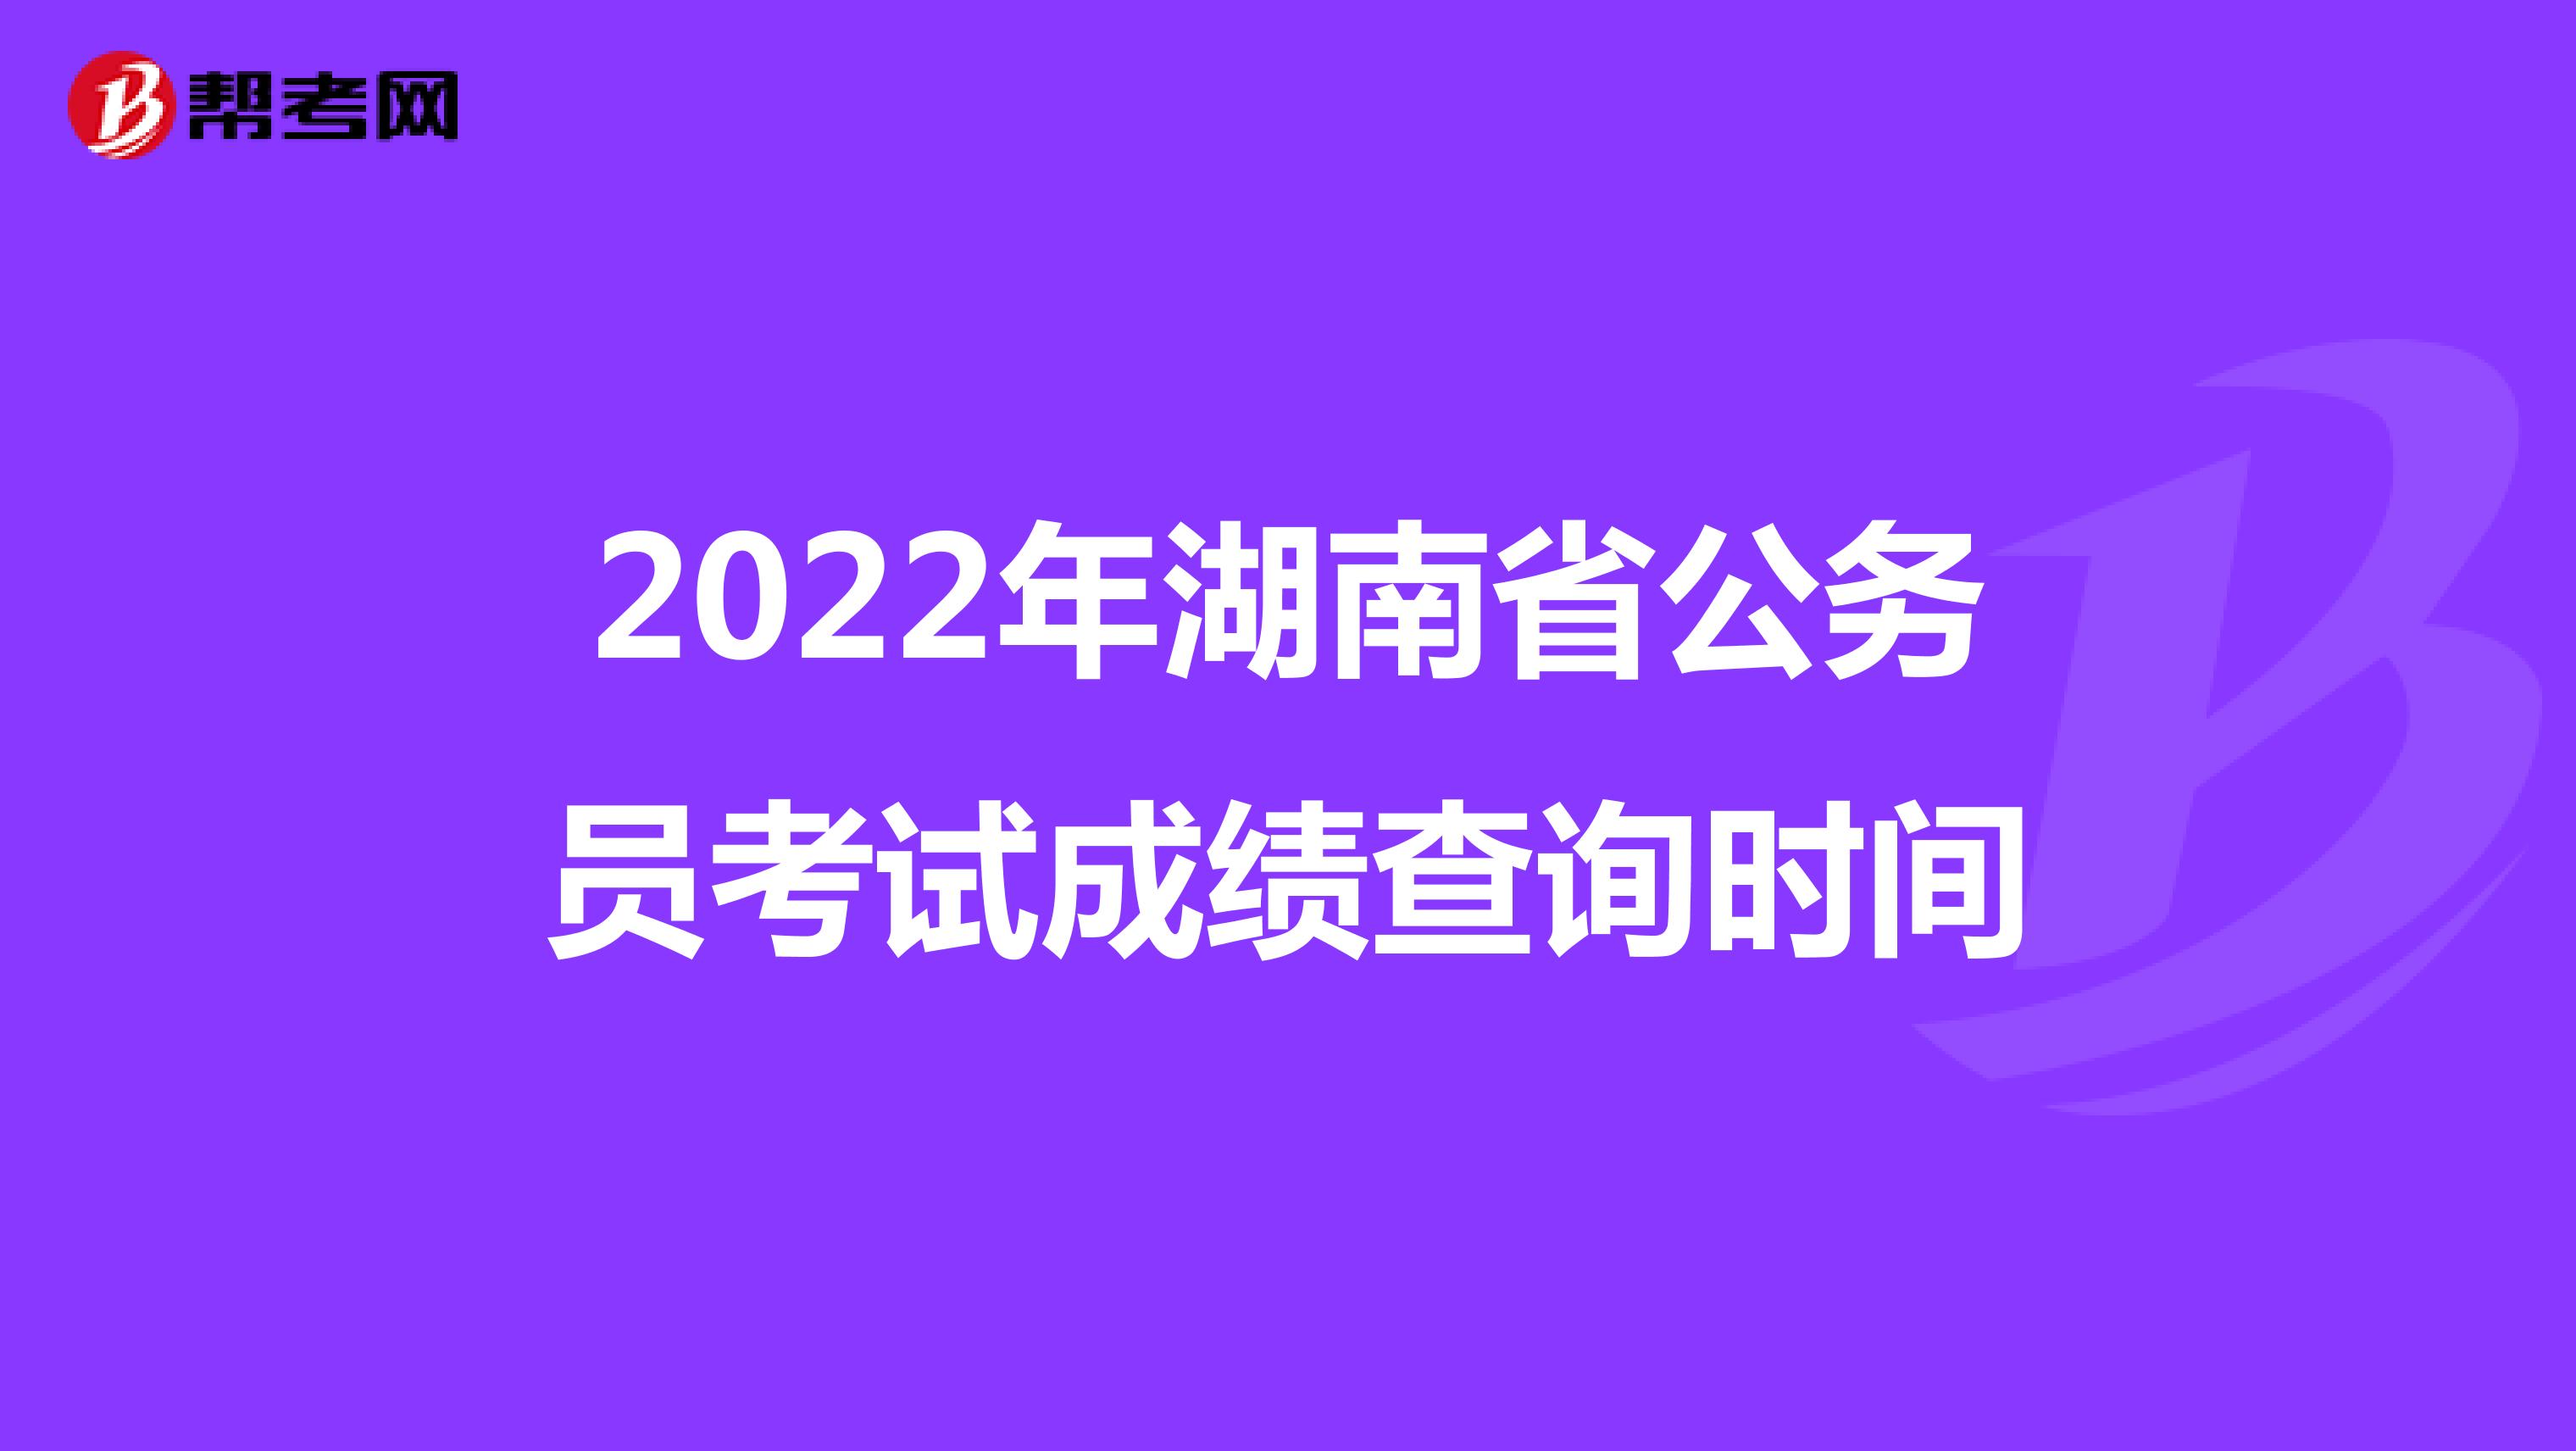 2022年湖南省公务员考试成绩查询时间